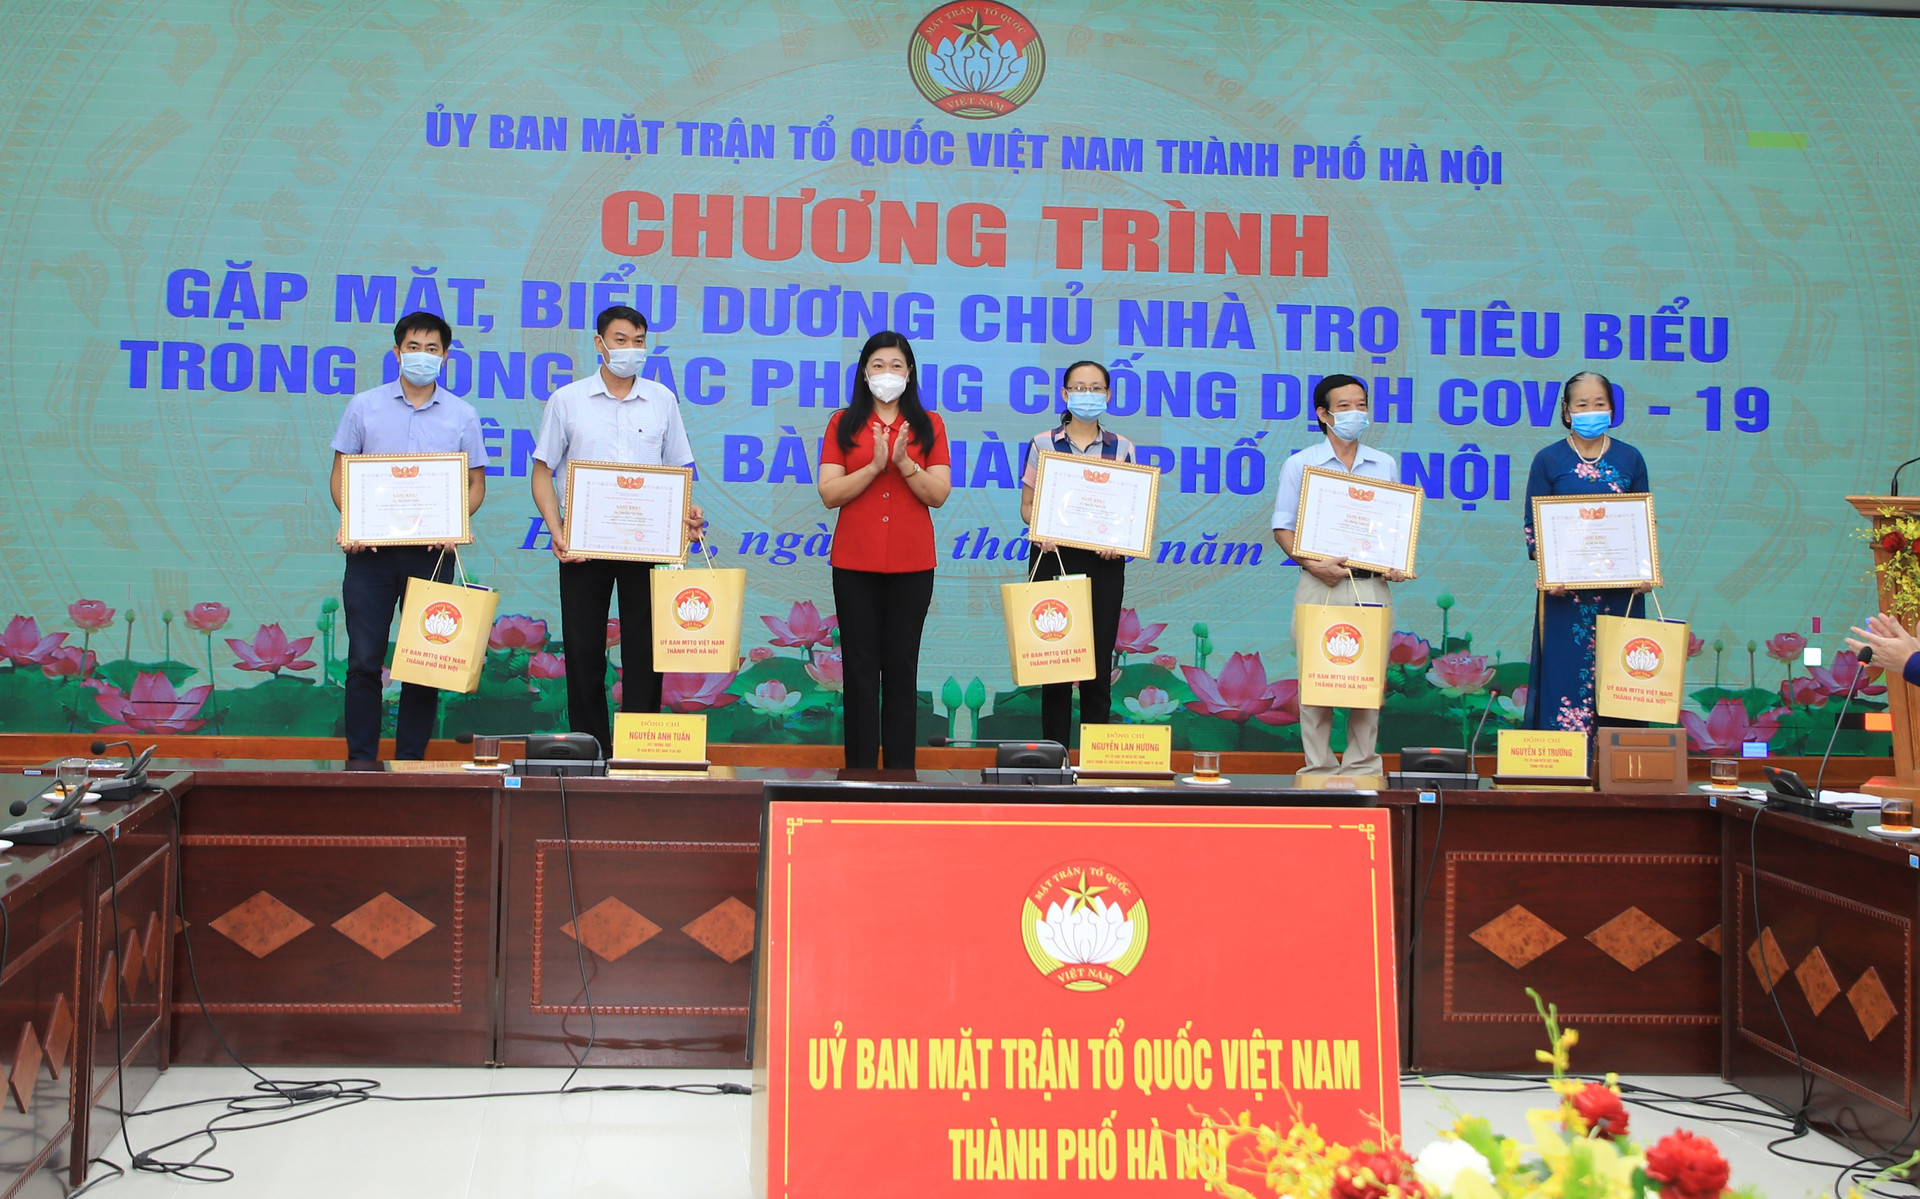 Ủy ban MTTQ thành phố Hà Nội biểu dương, khen thưởng chủ nhà trọ tiêu biểu. 